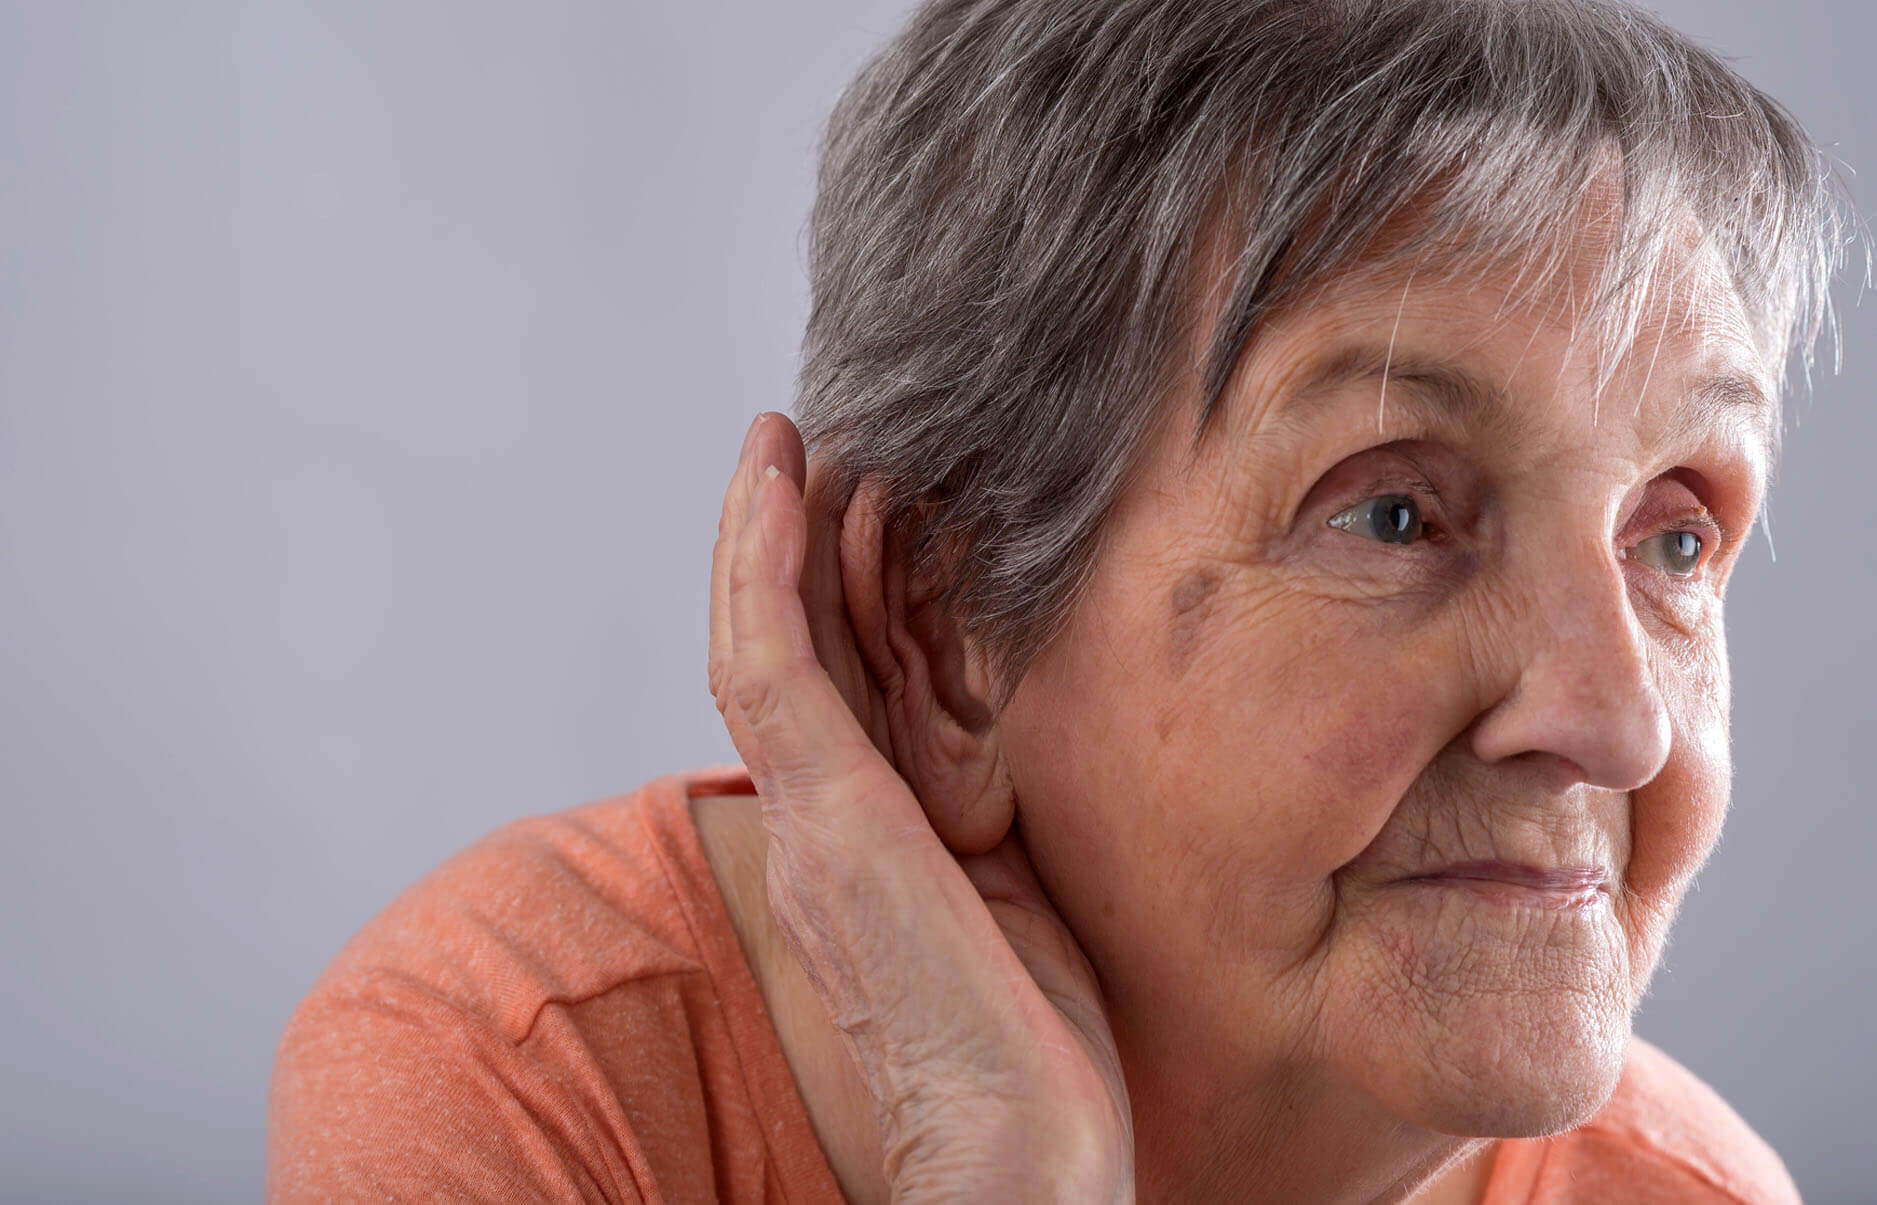 problemy ze słuchem u osób starszych, praca jako opiekunka